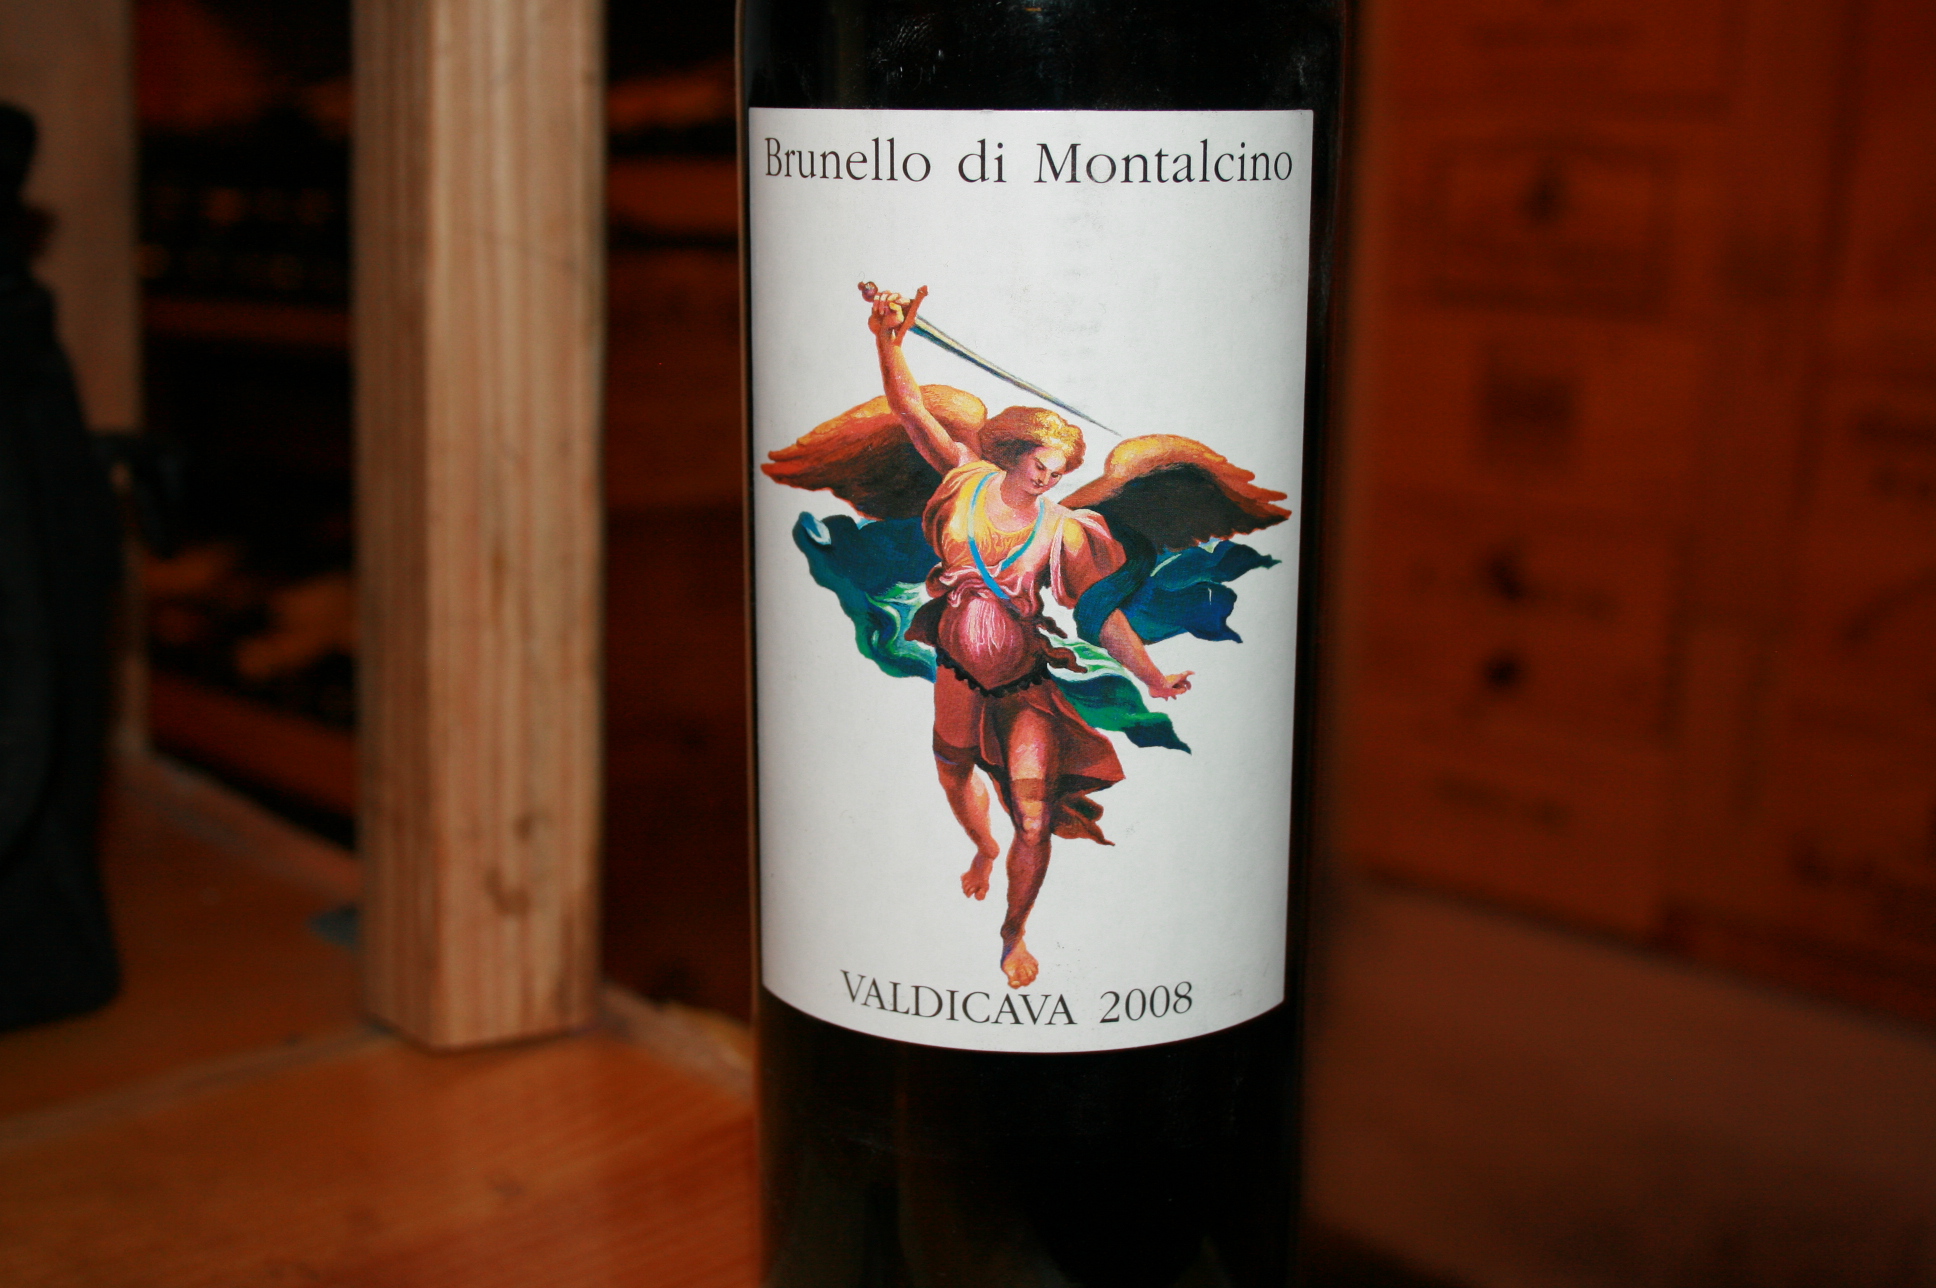 2007 Valdicava Brunello di Montalcino (Magnum) - click image for full description